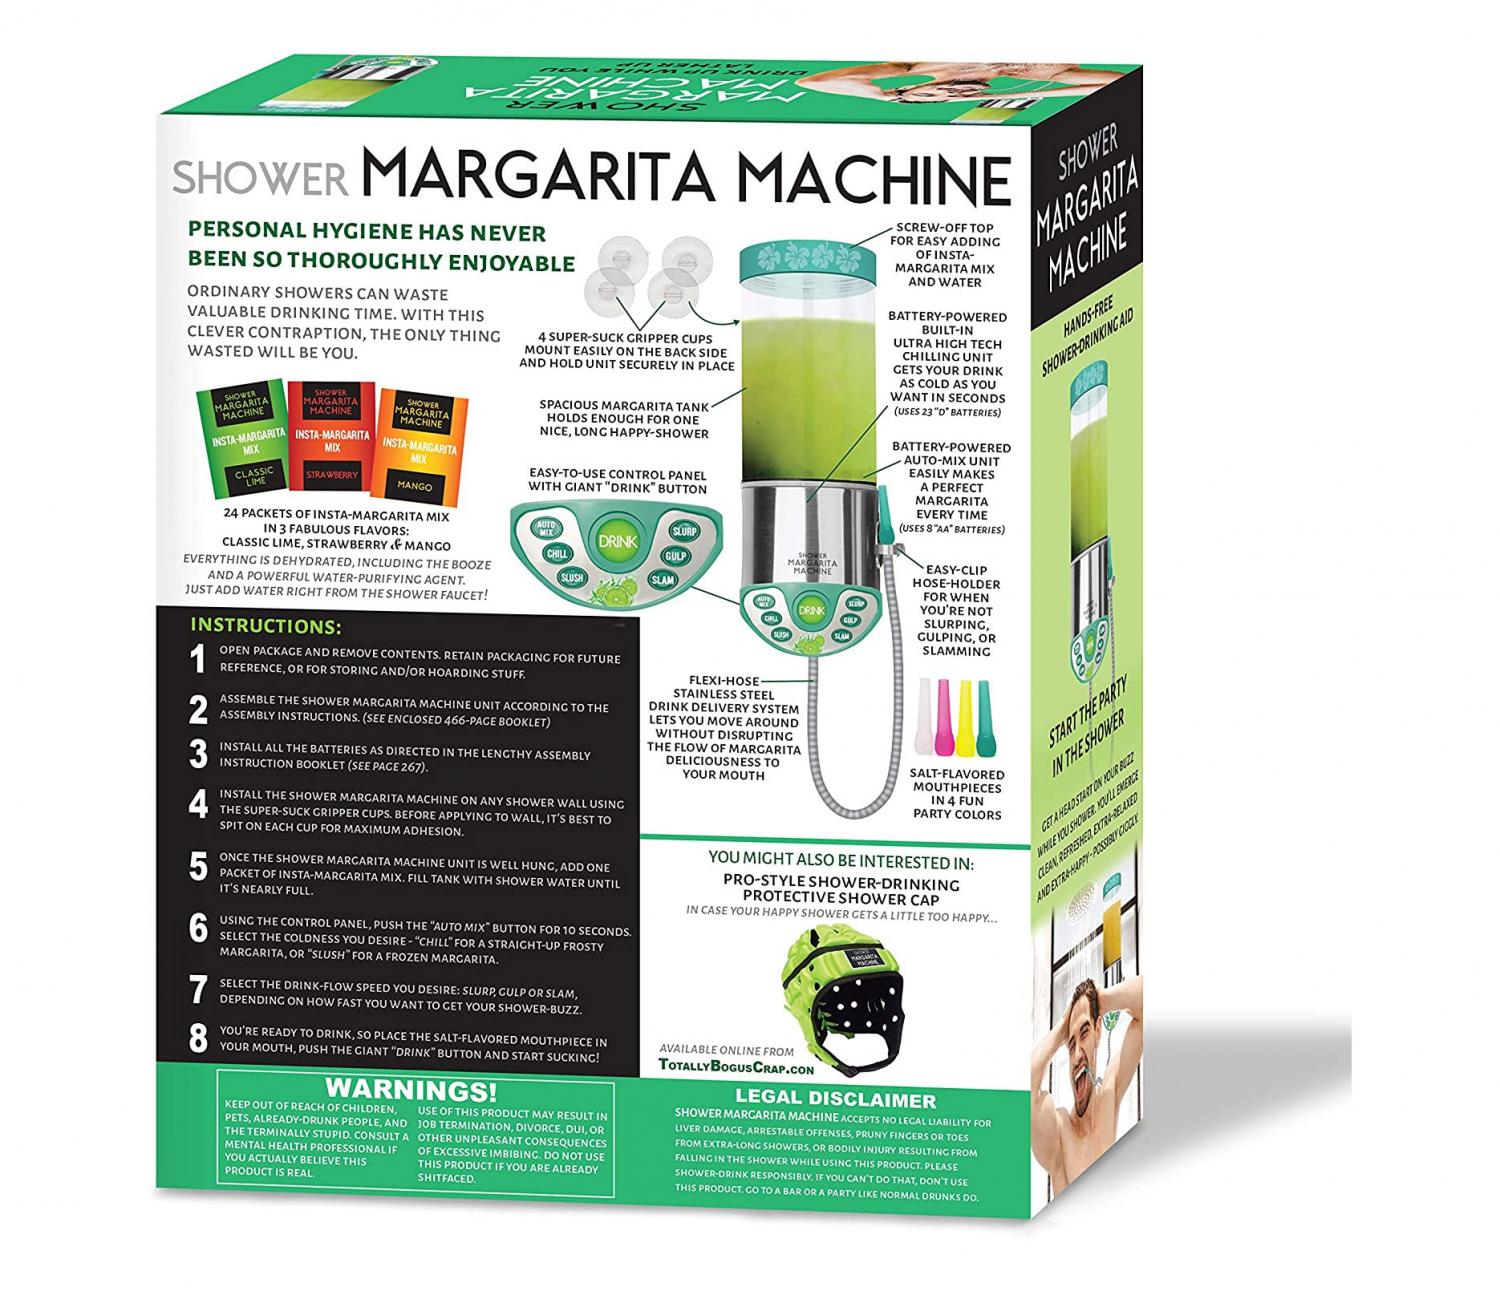 Shower Margarite Machine - Wall mounted margarita machine for shower